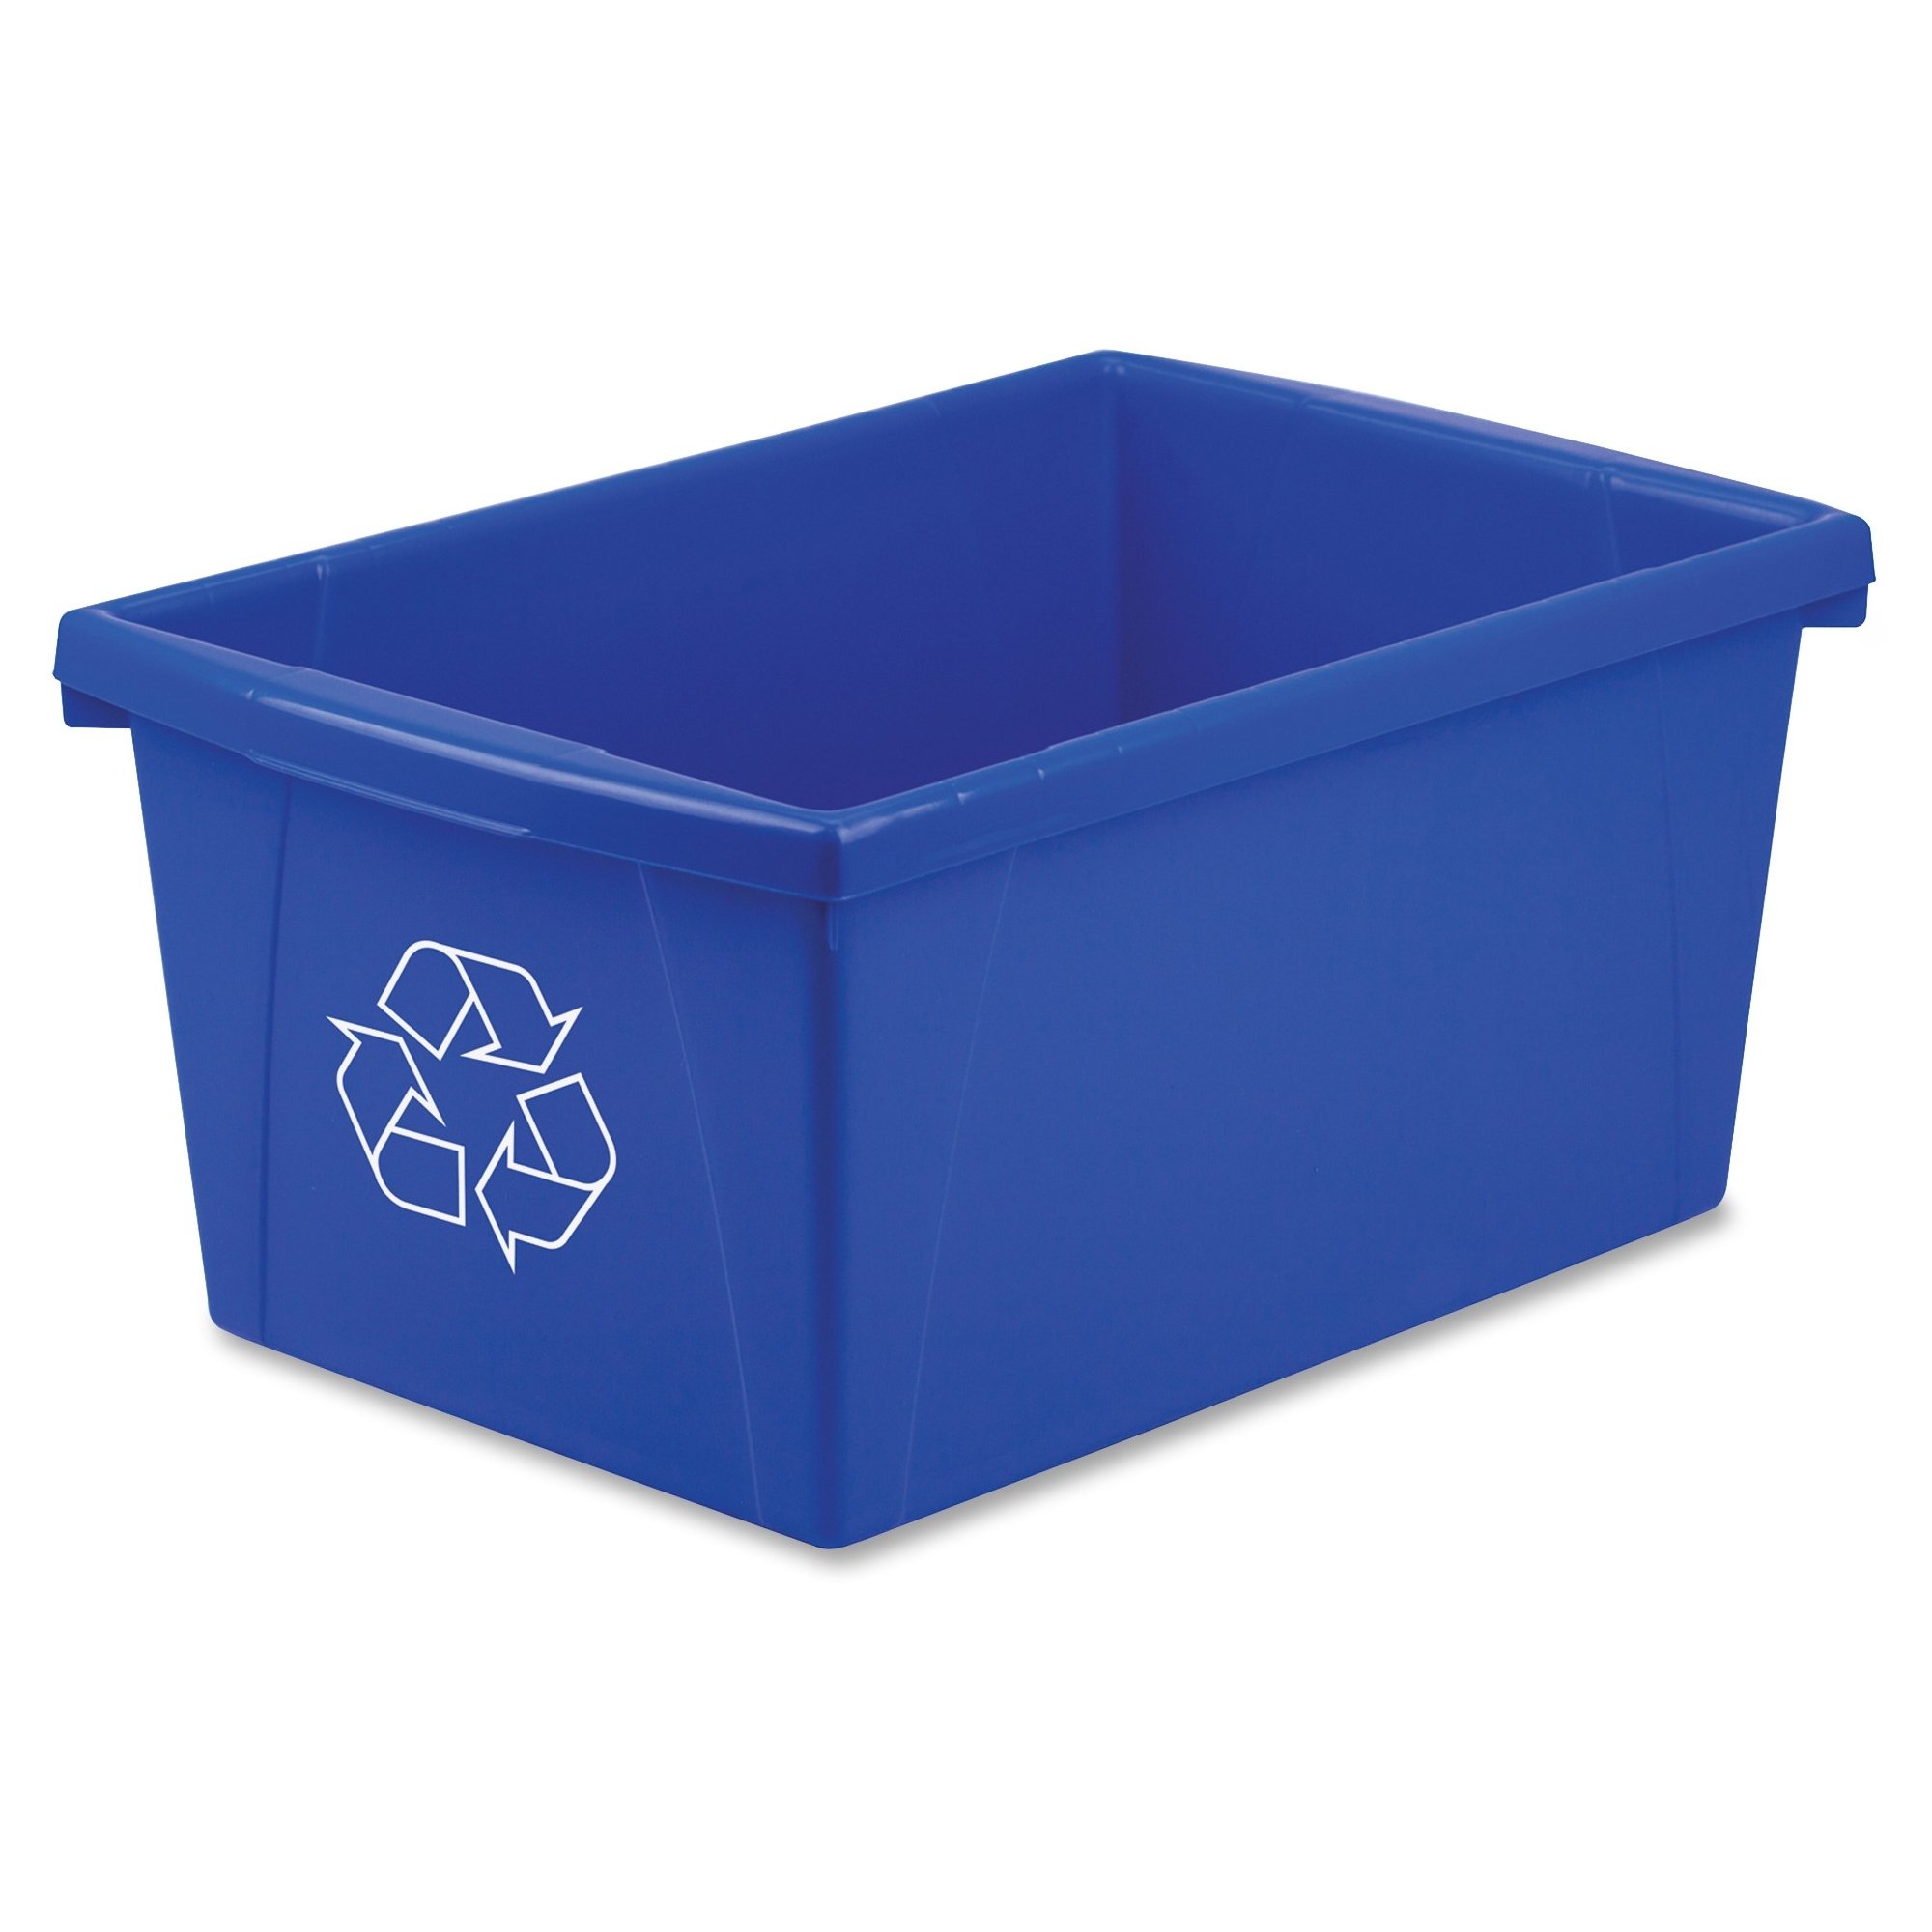 Storex Legal Size Paper Recycle Bin